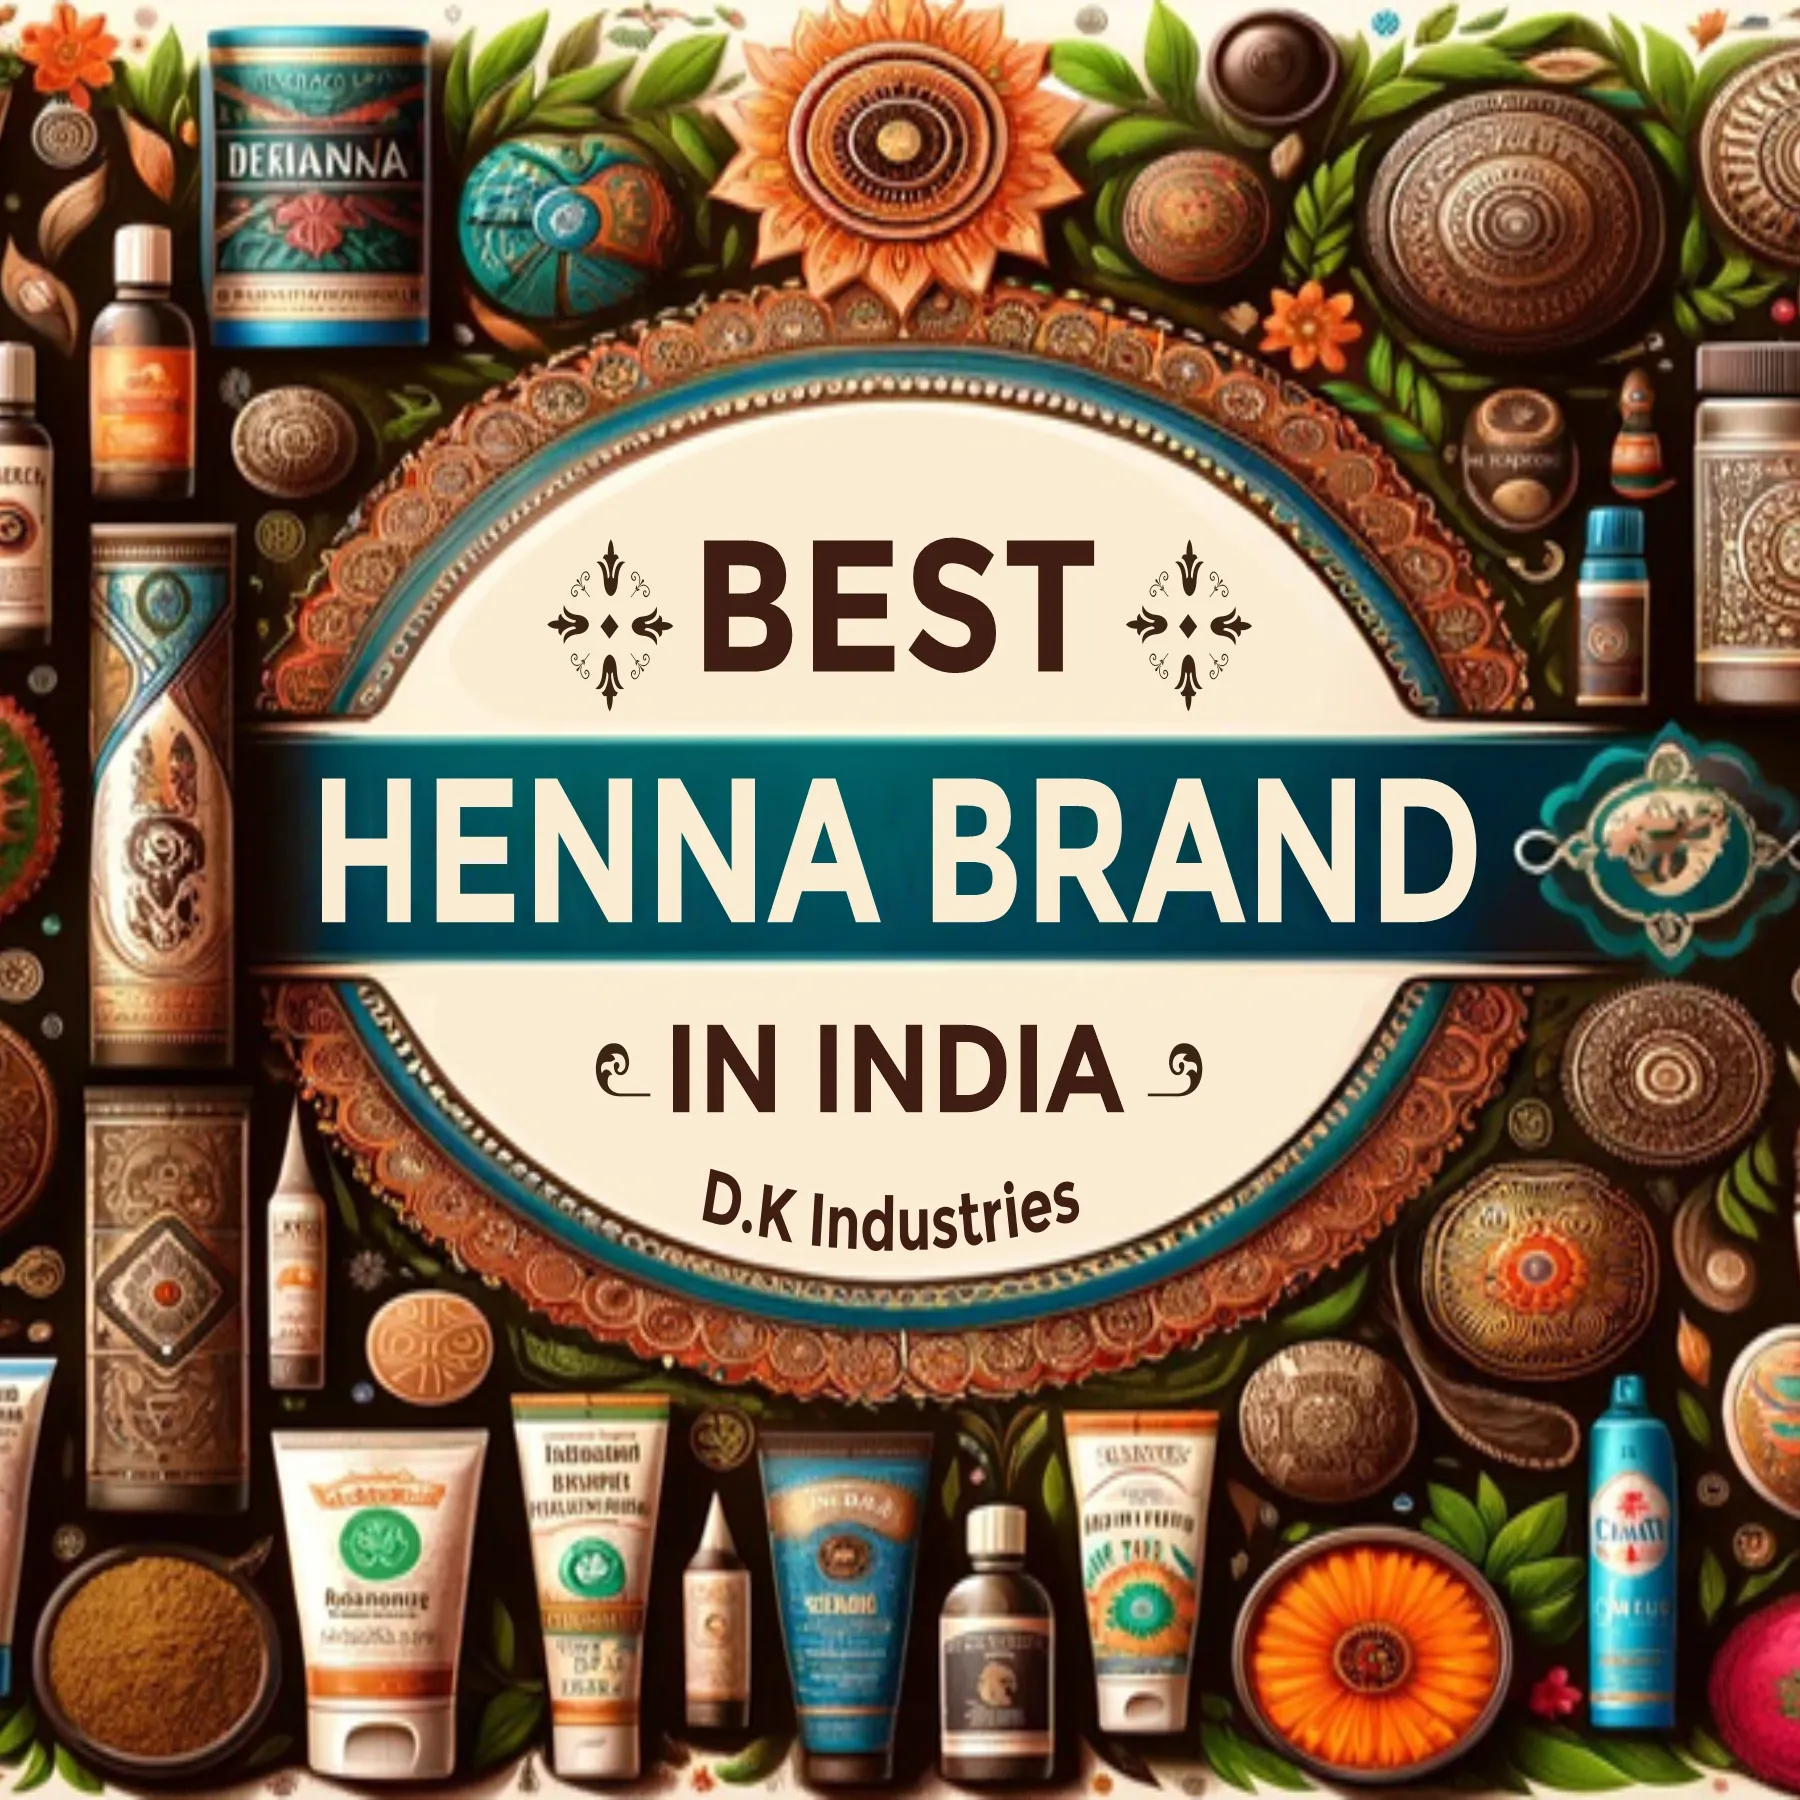 Best Henna Brand in India - www.dkihenna.com